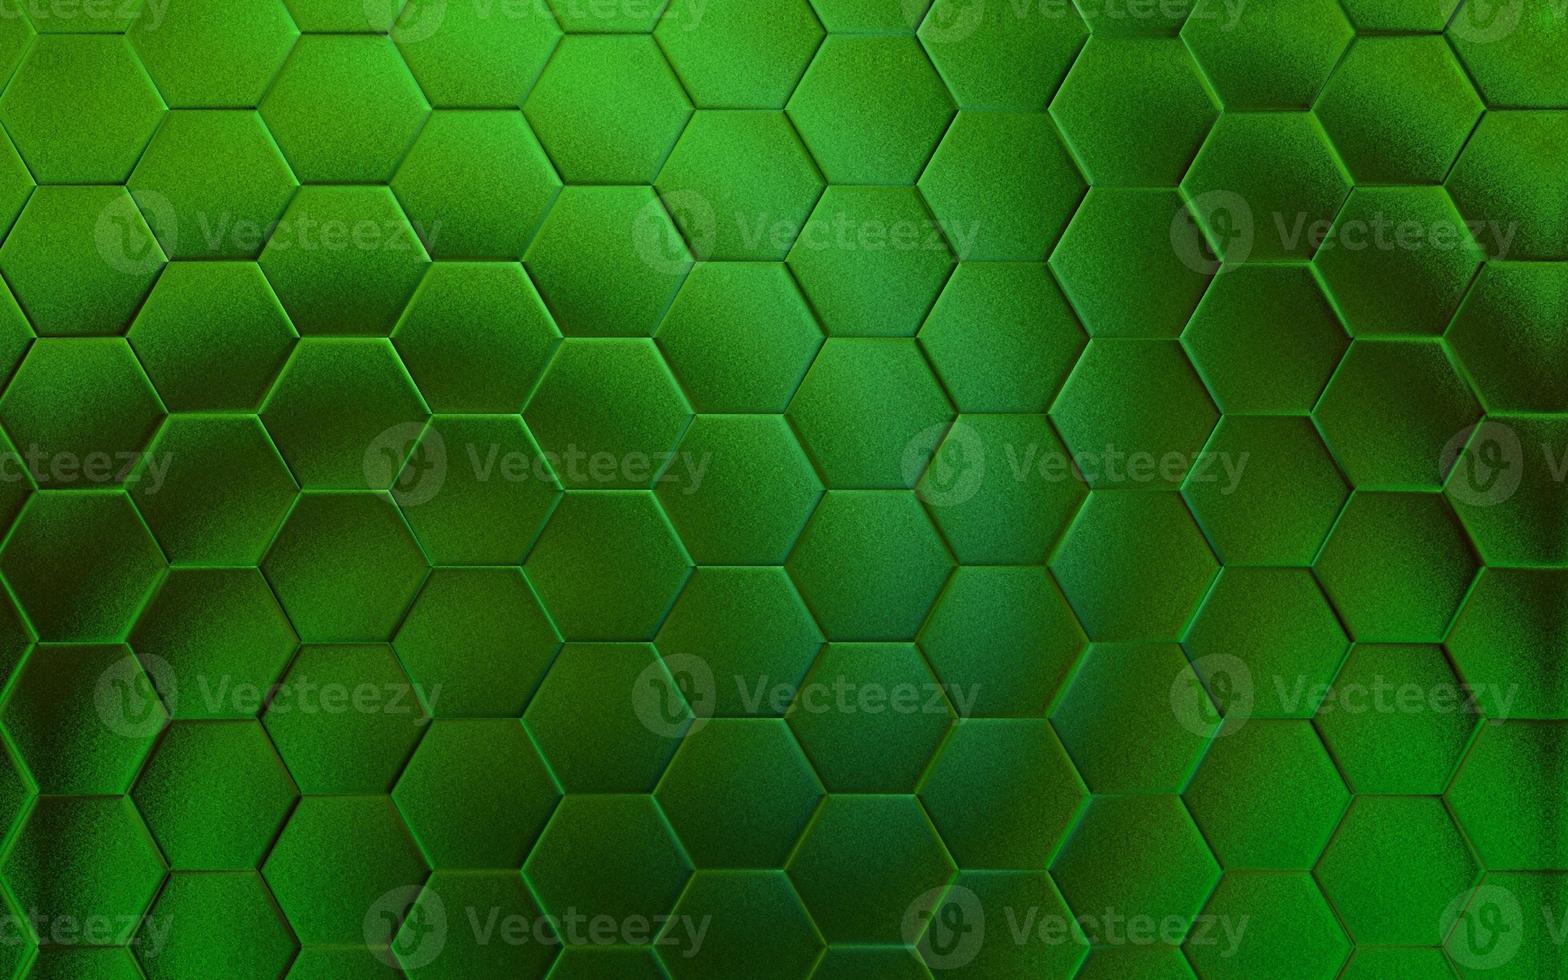 realistisk grön vaxkaka eller hexagonal mönster bakgrund. elegant vaxkaka textur. lyx sexhörning mönster. teknologi och data bakgrund design. foto